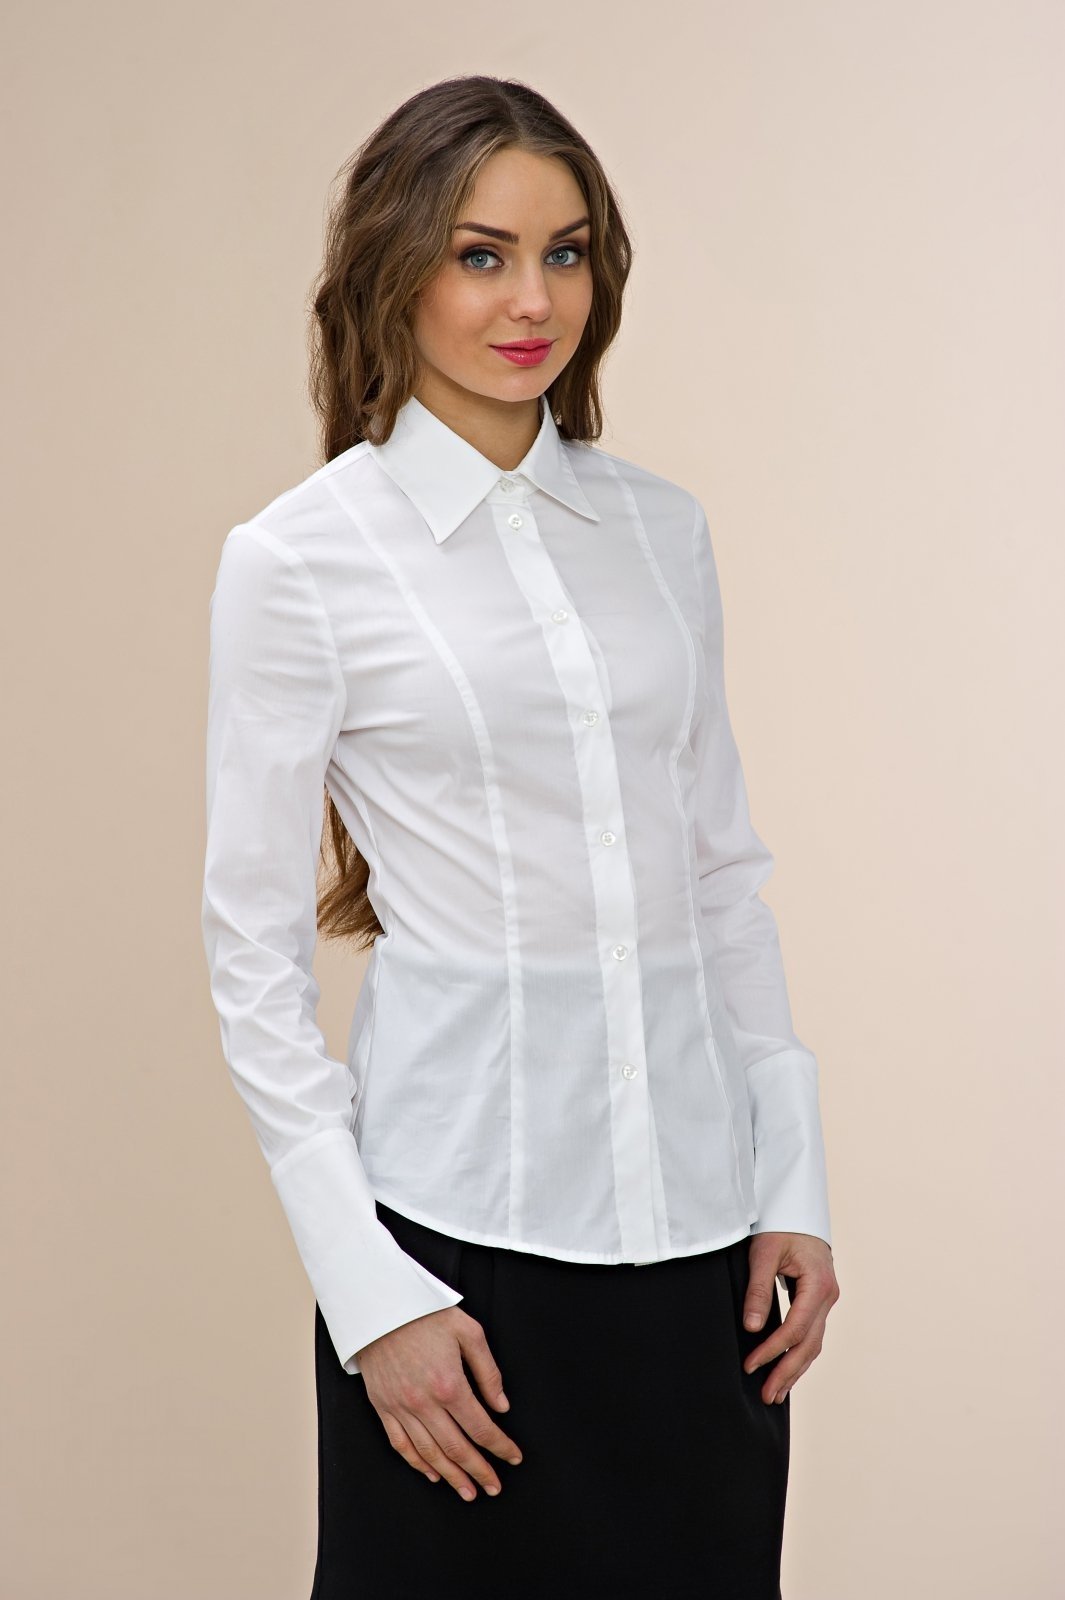 Озон белая блузка. Блузка. Блузка женская. Левушка в ьелой блузке. Строгая рубашка женская.